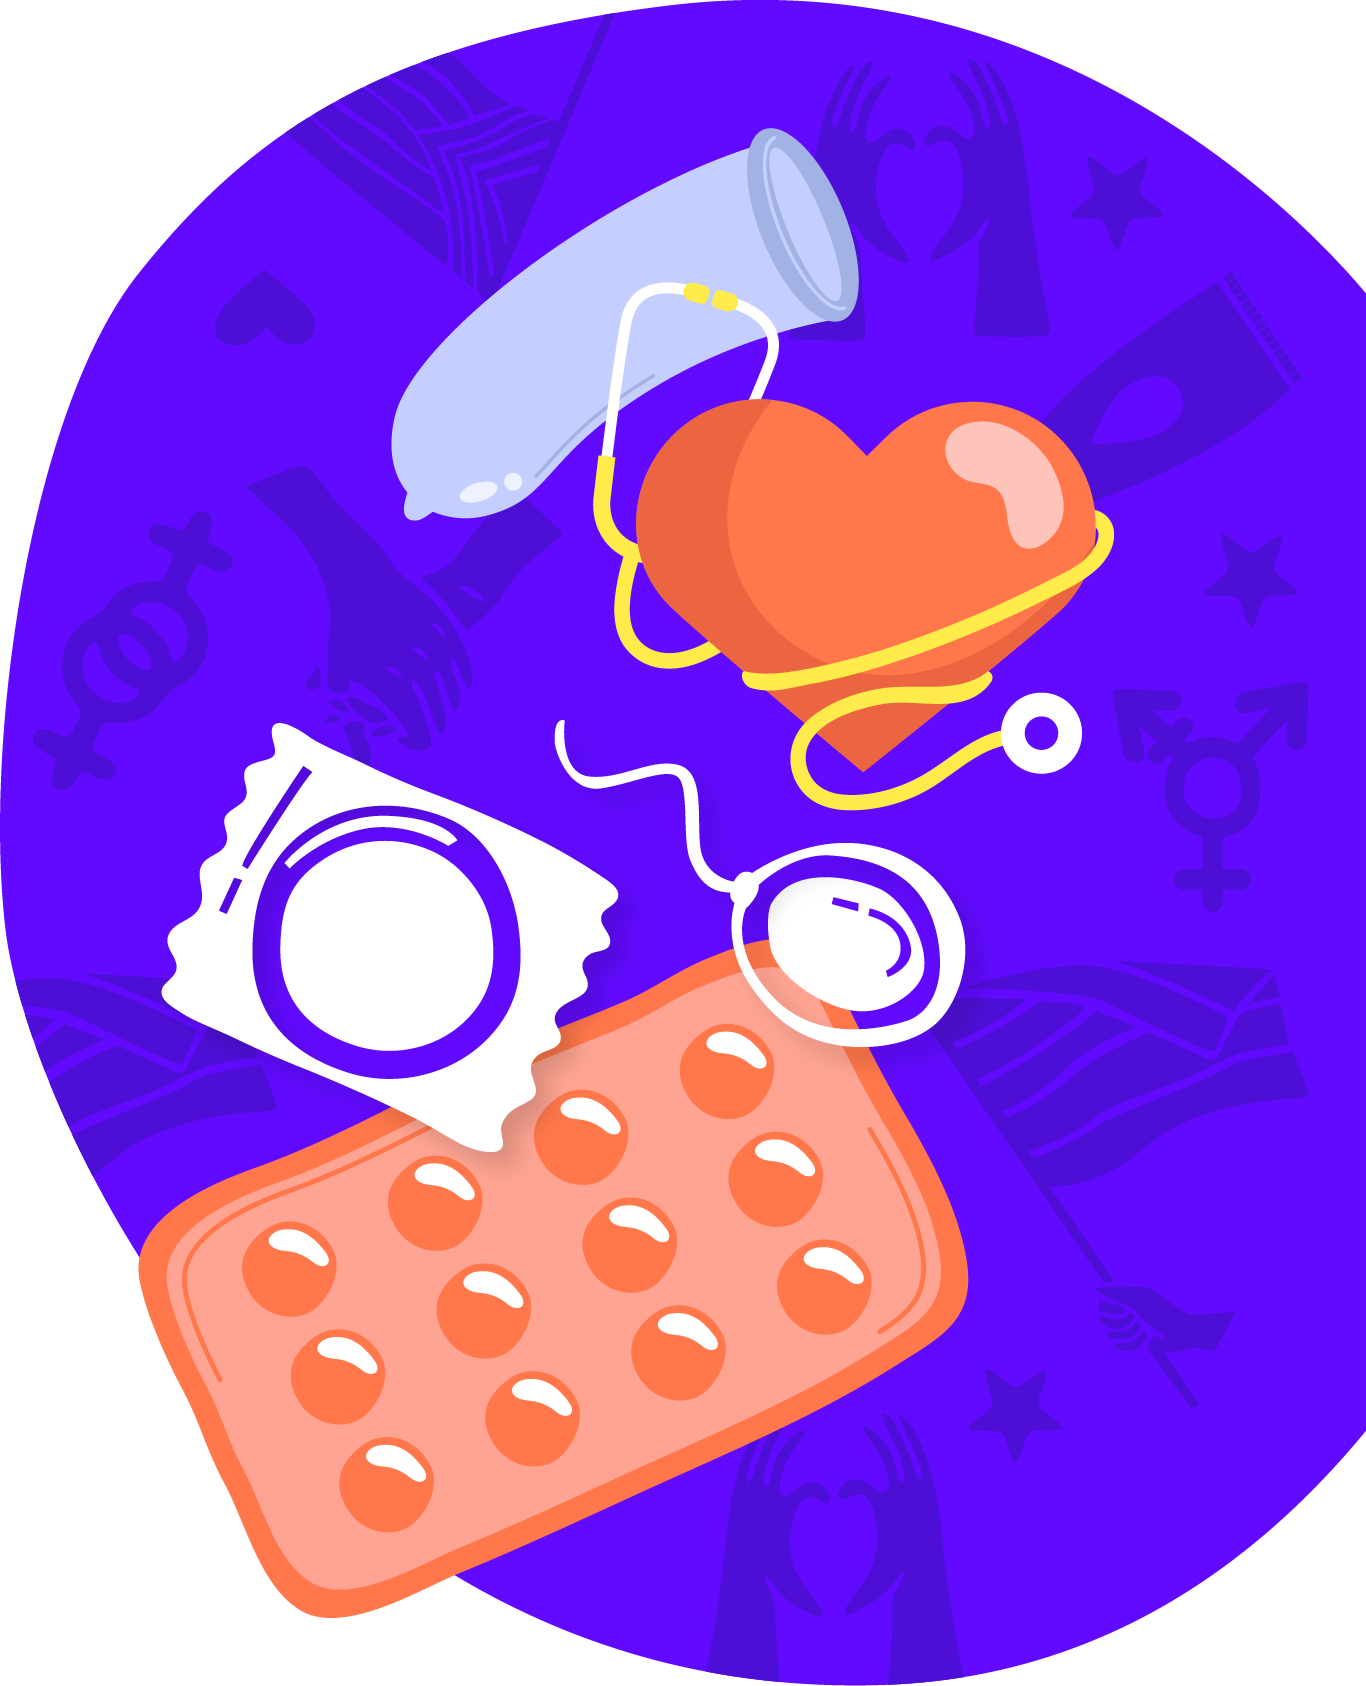 Una esfera violeta con varios íconos de salud sexual incluyendo los de control de nacimientos, condones y un corazón envuelto en un estetoscopio